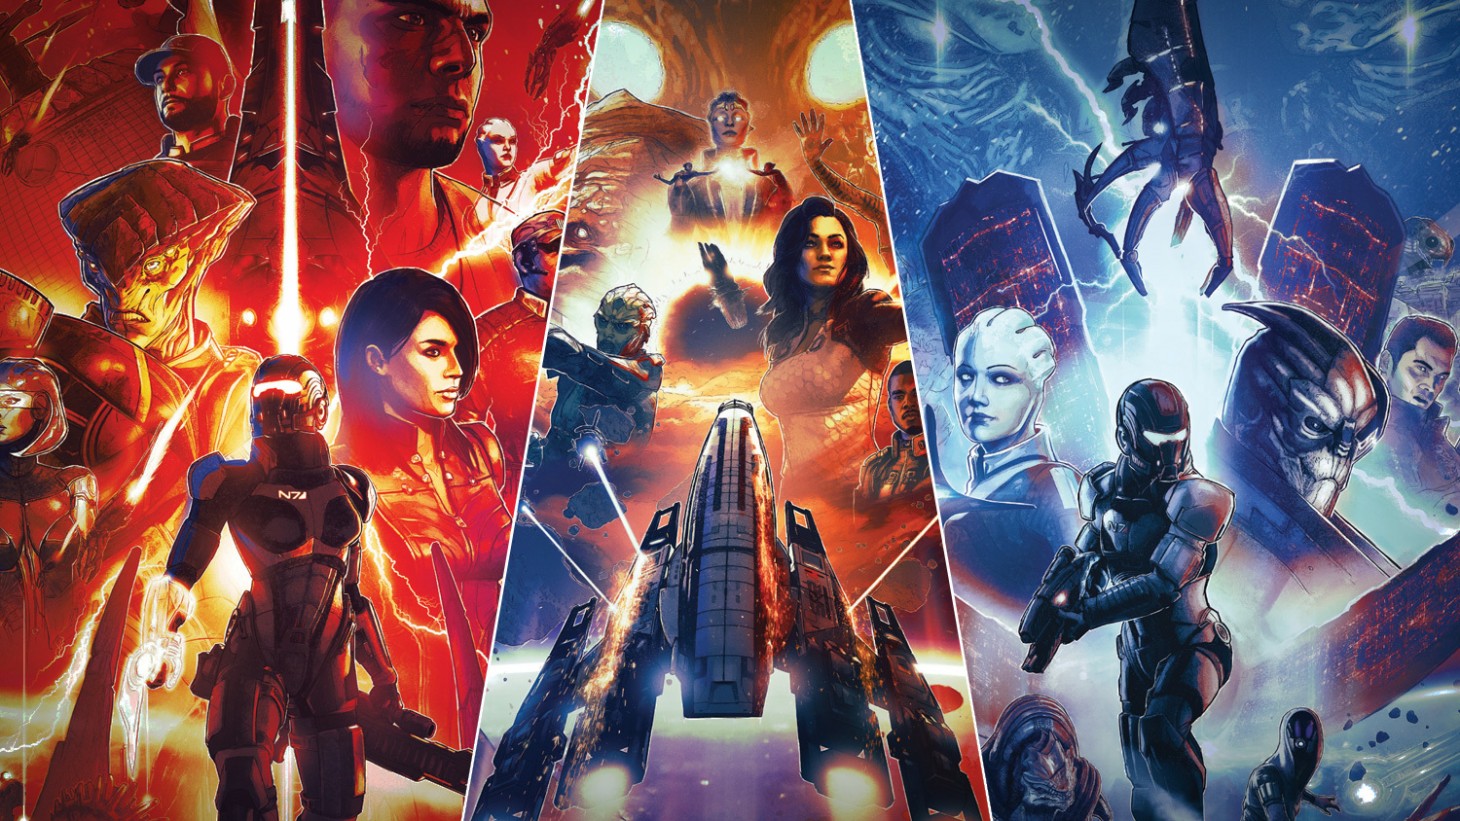 شایعه: از موتور گرافیکی Unreal Engine برای ساخت بازی جدید Mass Effect استفاده شده است